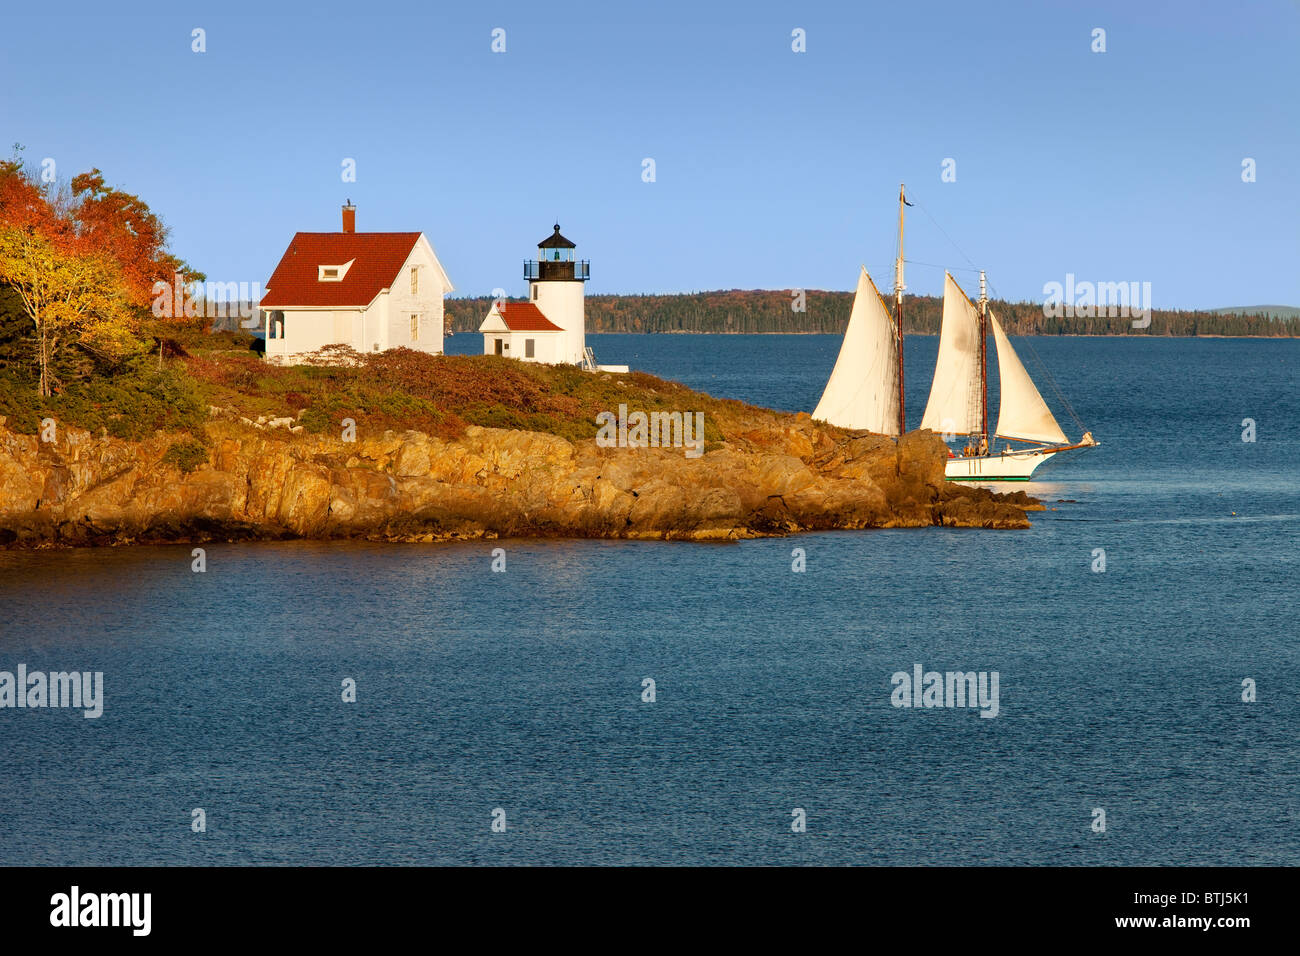 Voile goélette passé Curtis Island Lighthouse à Camden Maine USA Banque D'Images